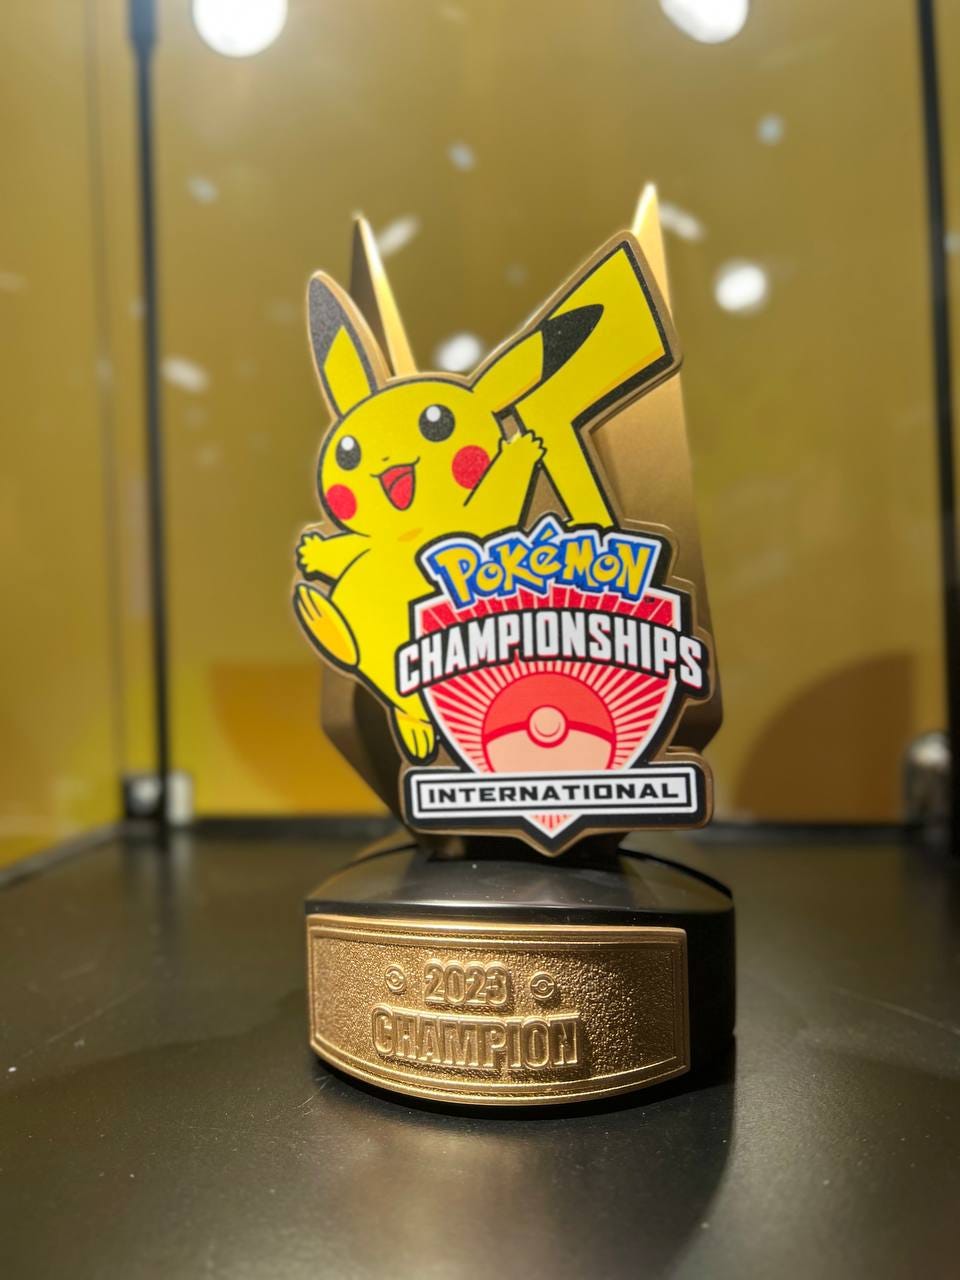 The Pokémon International Championships 2023 trophy!